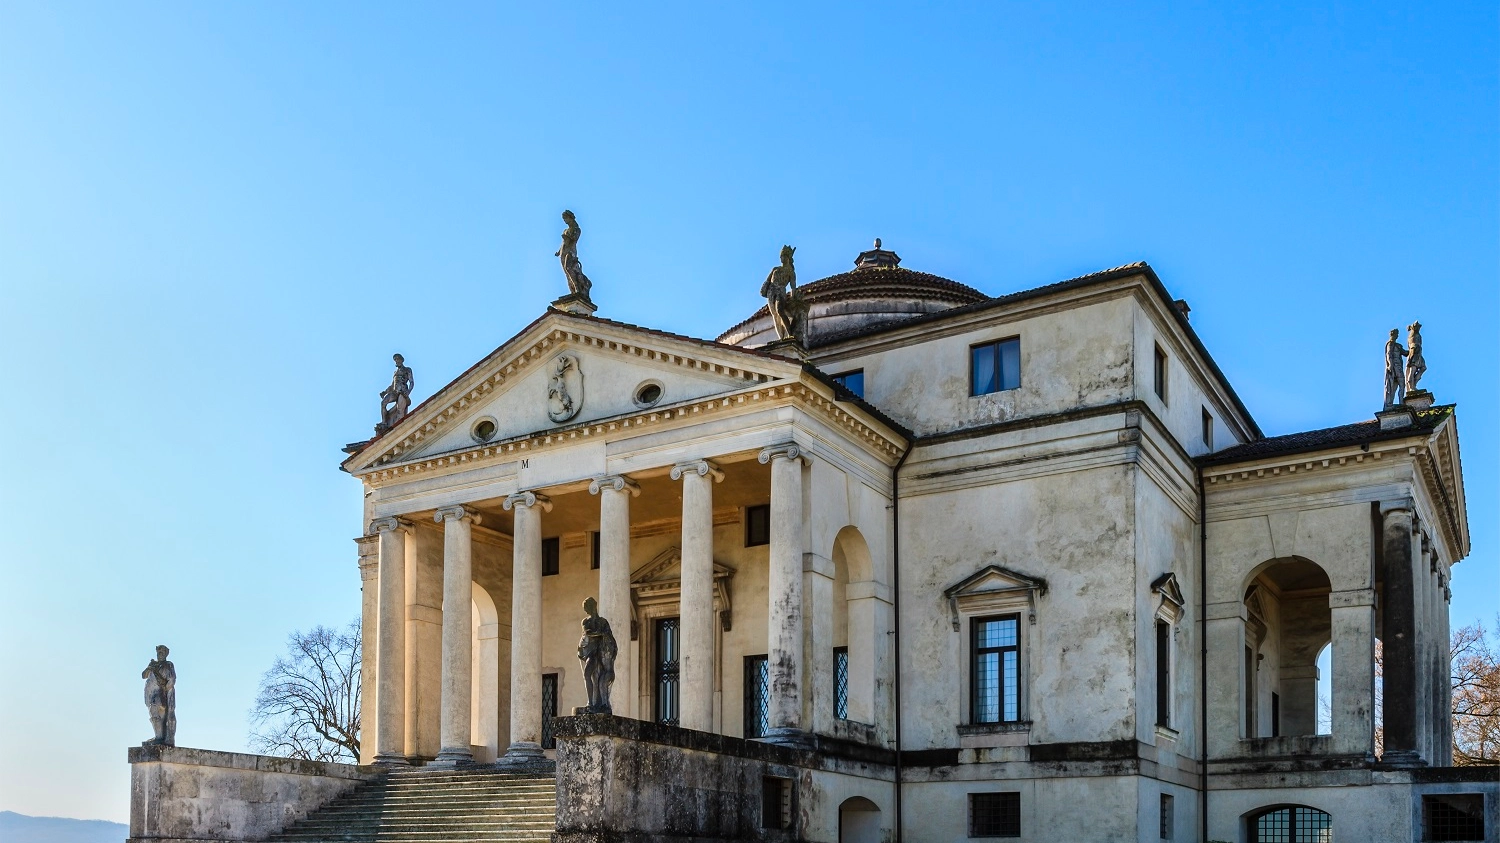 Villa Almerico Capra - La Rotonda, Vicenza, Italy